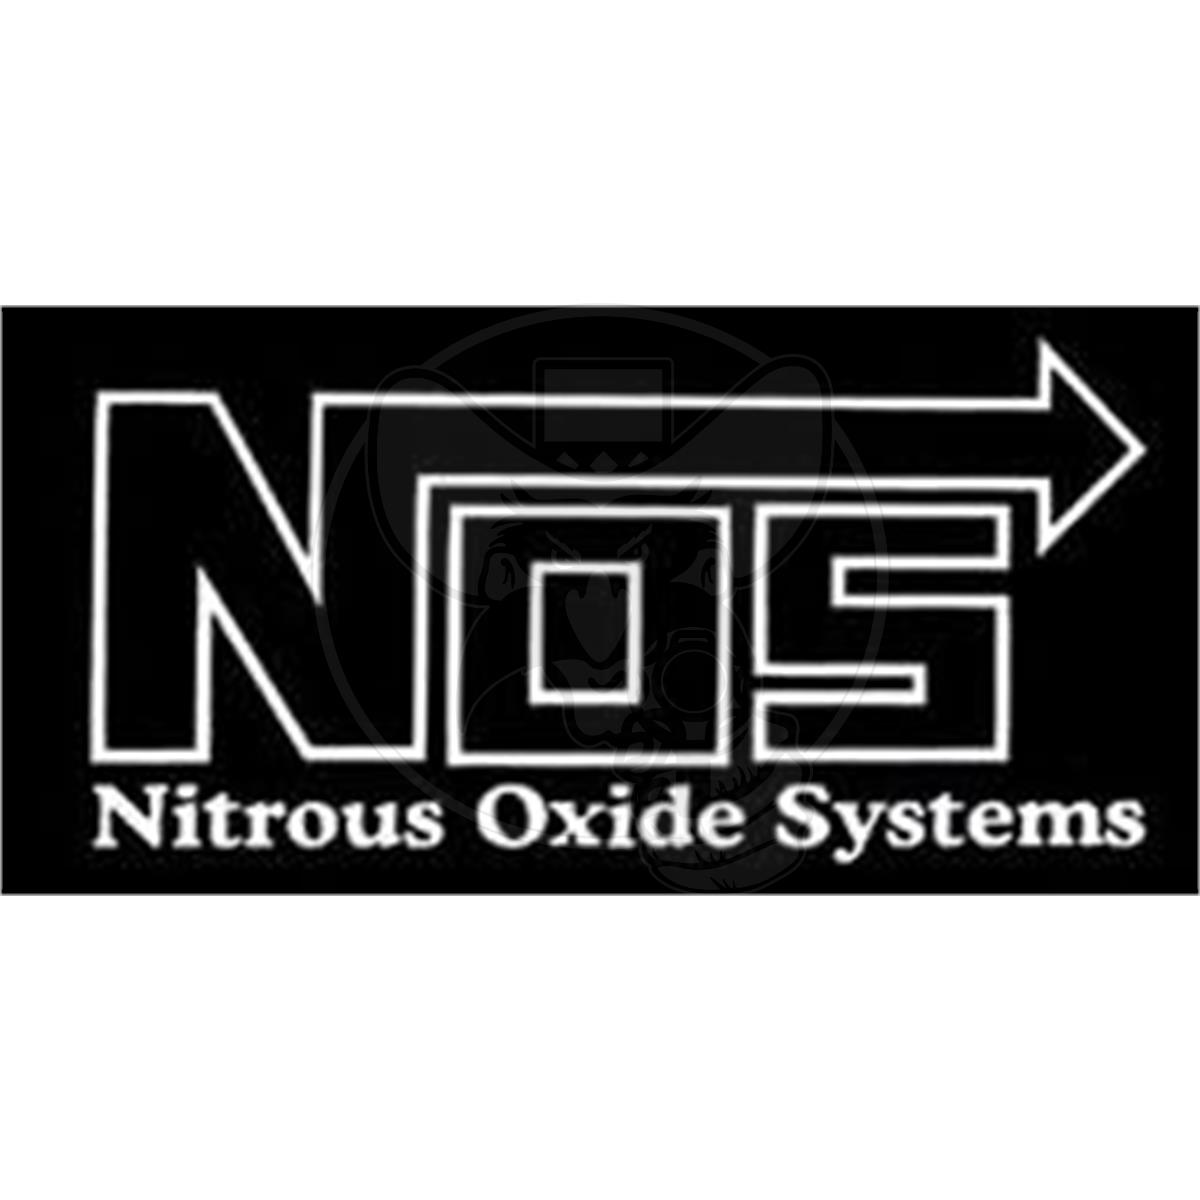 NOS Nitrous Oxide Sys 19220 Decal Sticker Sm Outline Logo Vinyl Cut NOS